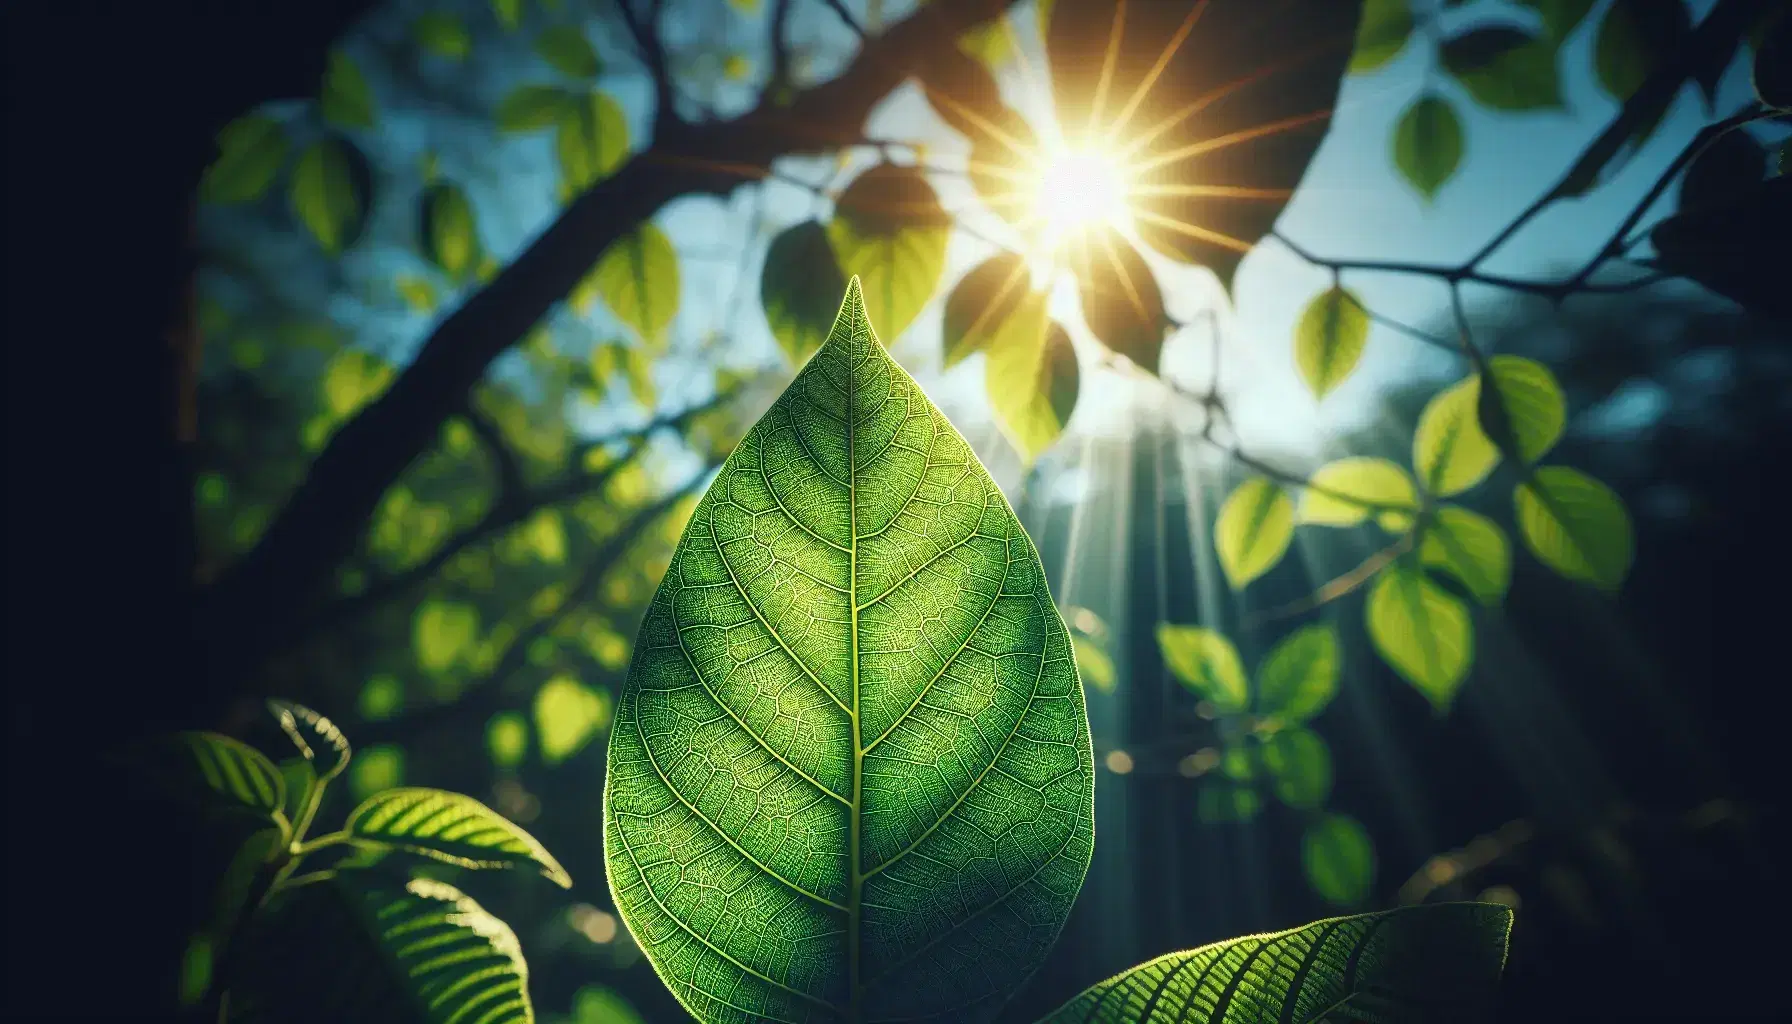 Foglia verde brillante traslucida al sole con venature evidenti e sfondo sfocato di foglie e cielo azzurro.